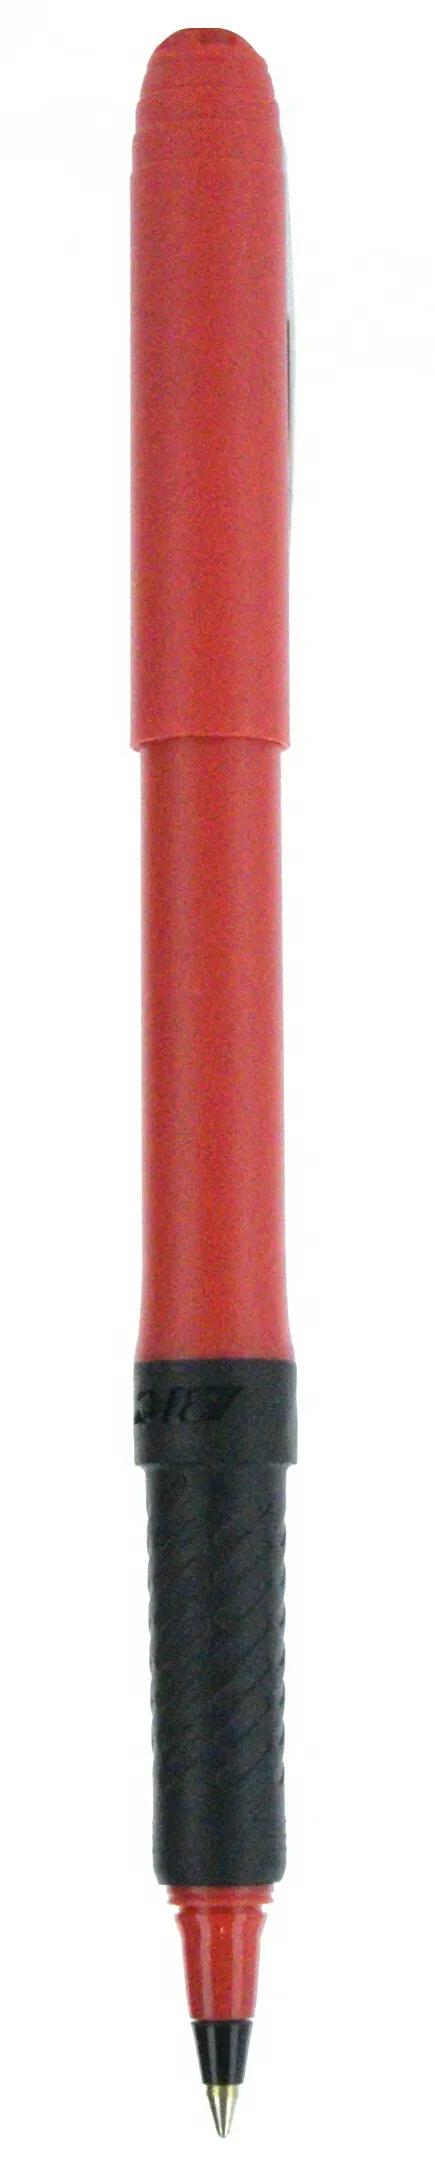 BIC® Grip Roller Pen 142 of 147